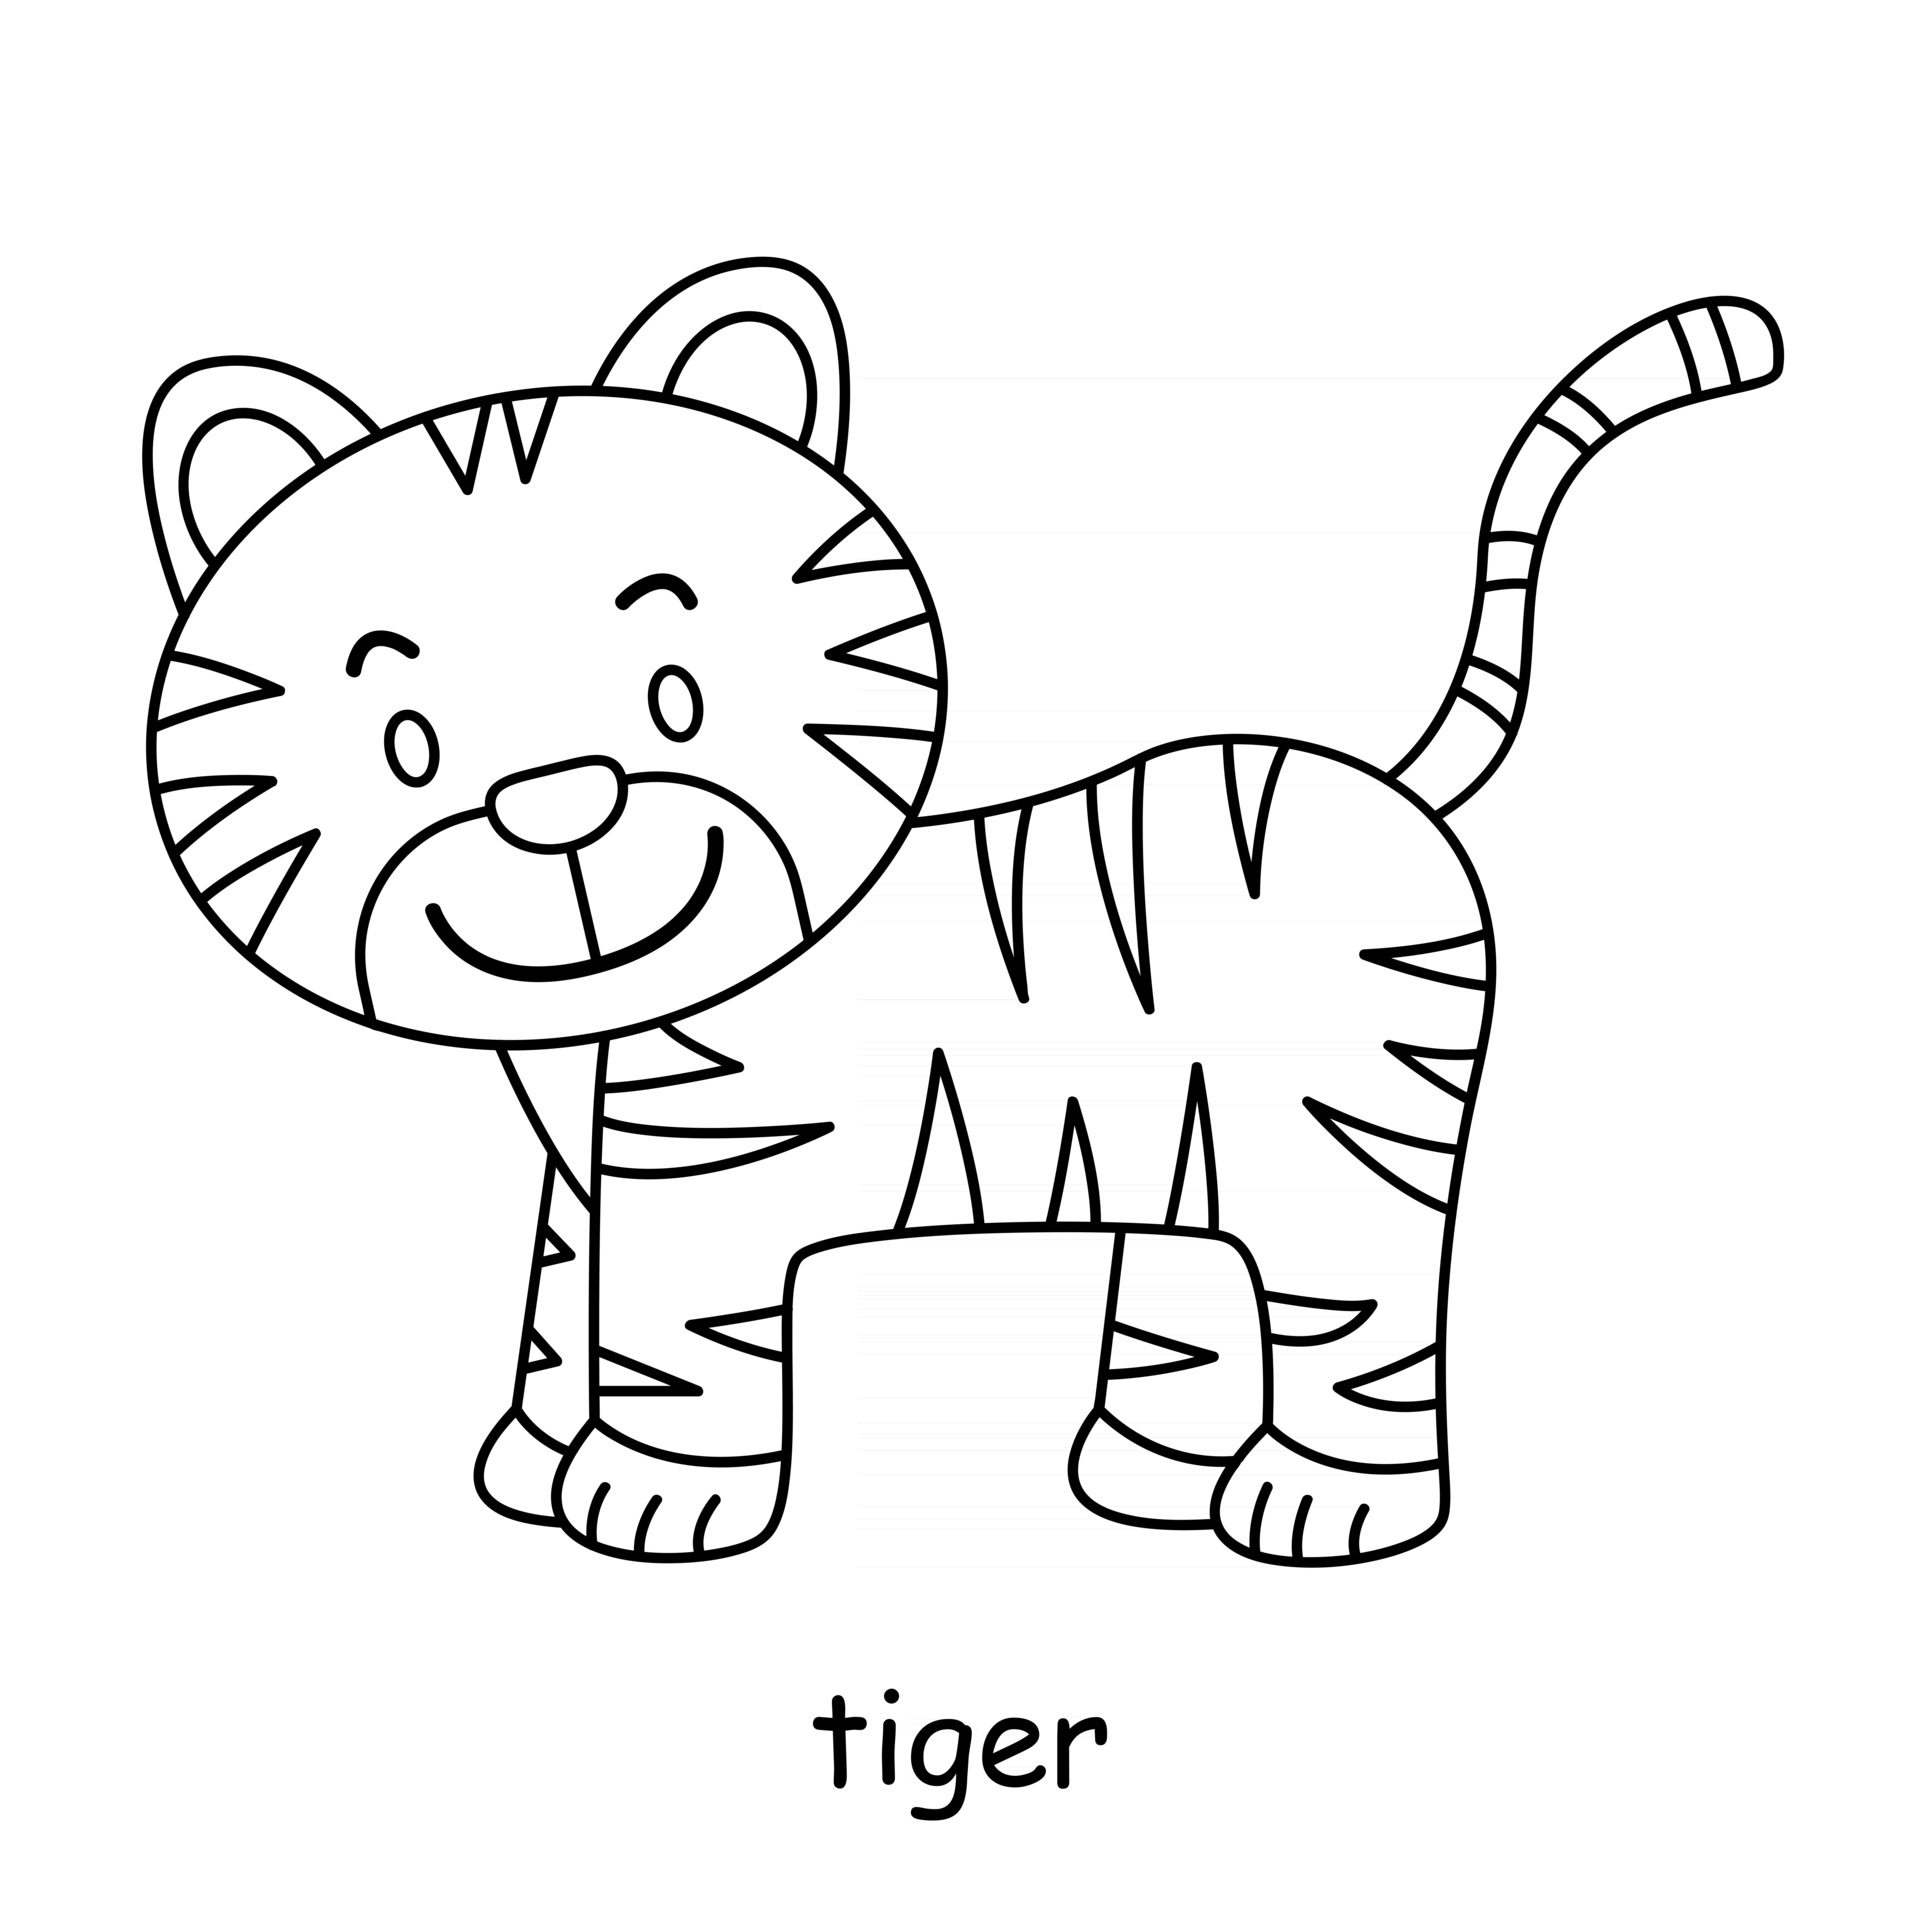 niños para colorear sobre el tema del vector animal, tigre 2991261 Vector  en Vecteezy